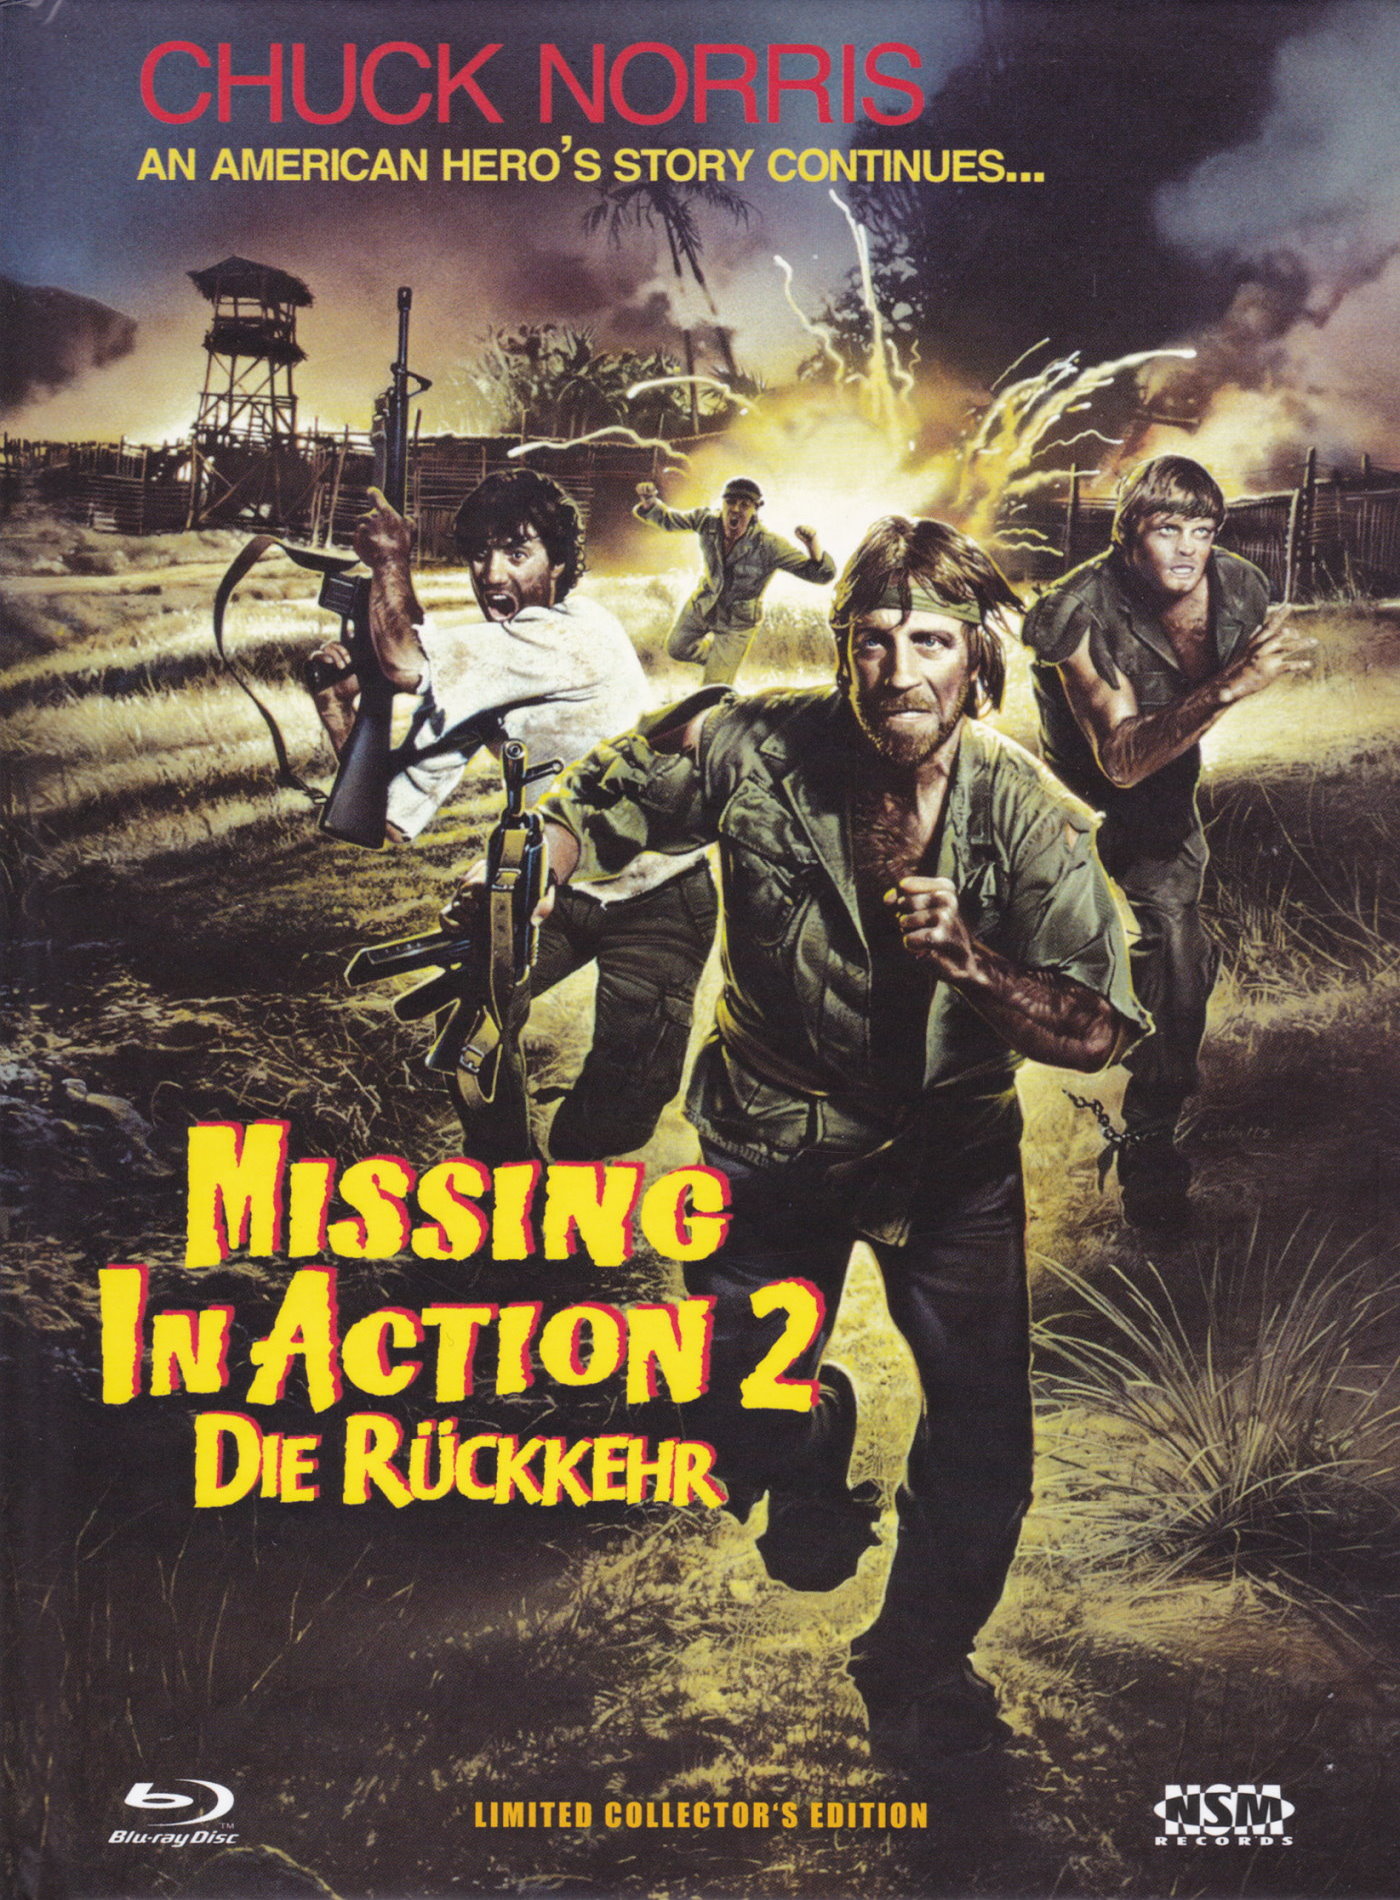 Cover - Missing in Action 2. Teil - Die Rückkehr.jpg